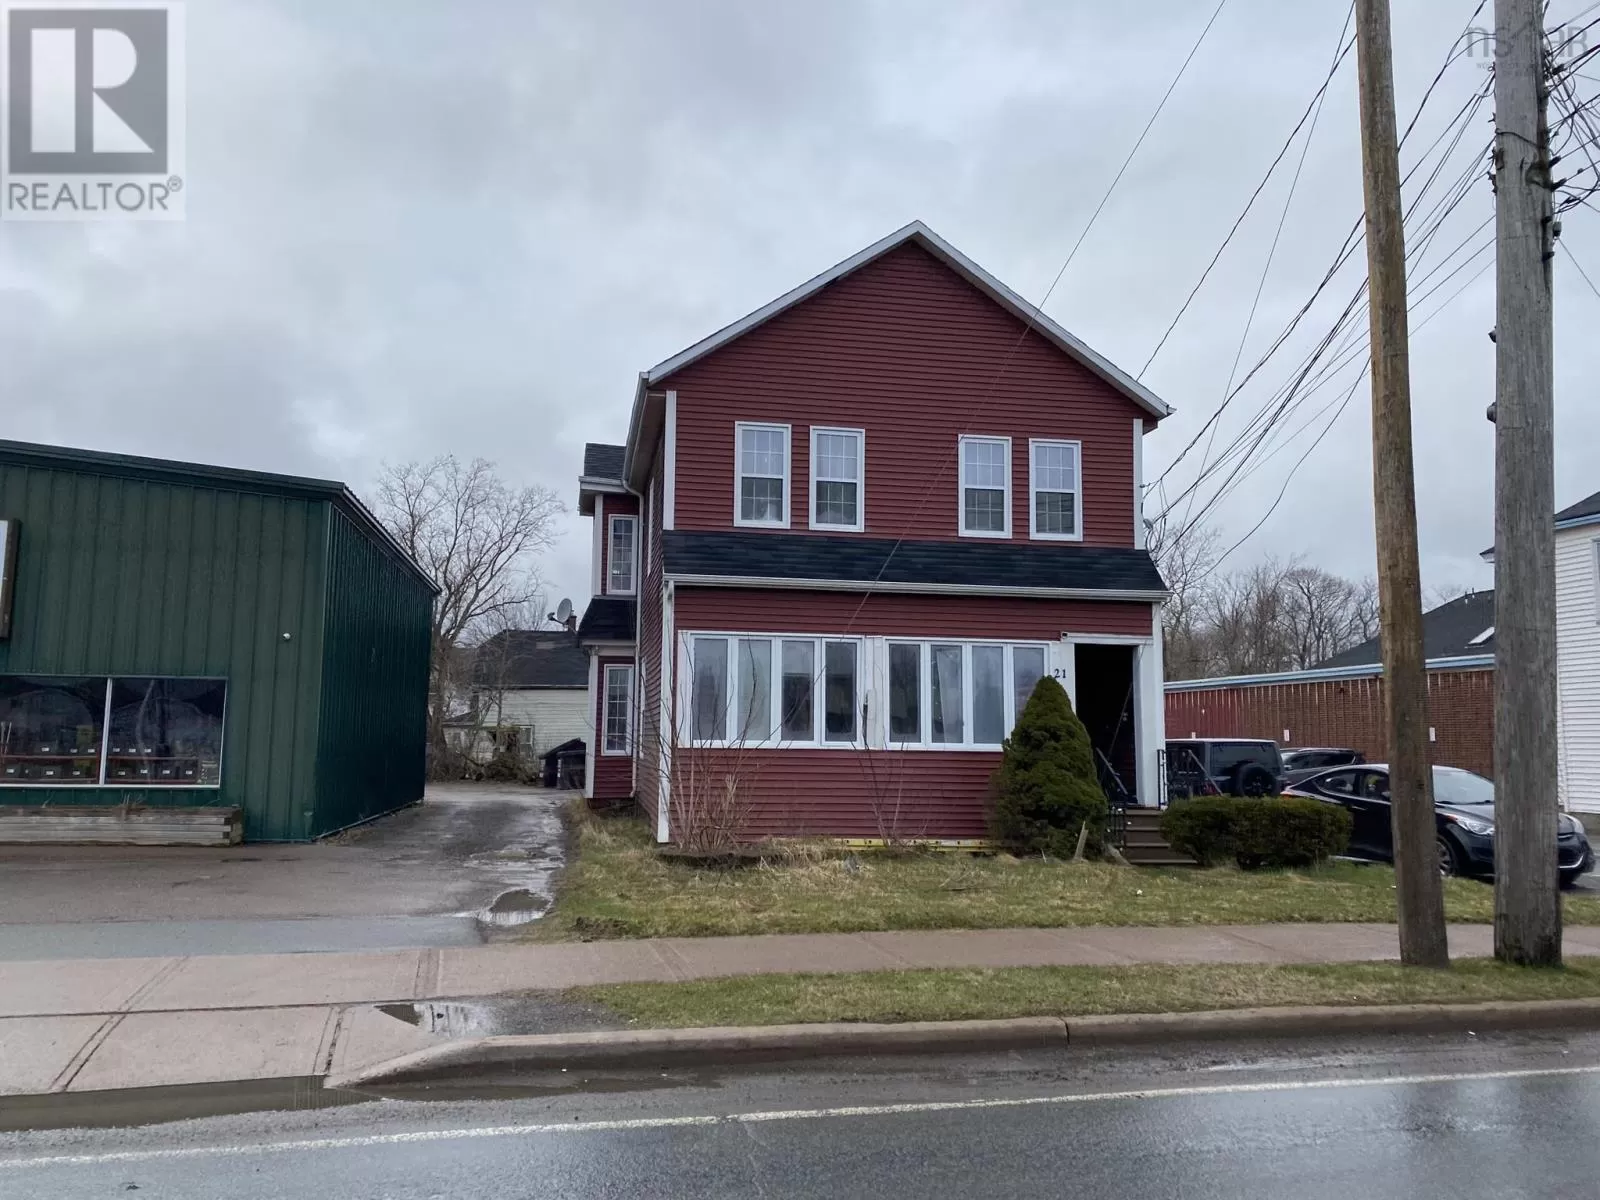 Fourplex for rent: 21 Main Street, Bible Hill, Nova Scotia B2N 4G5